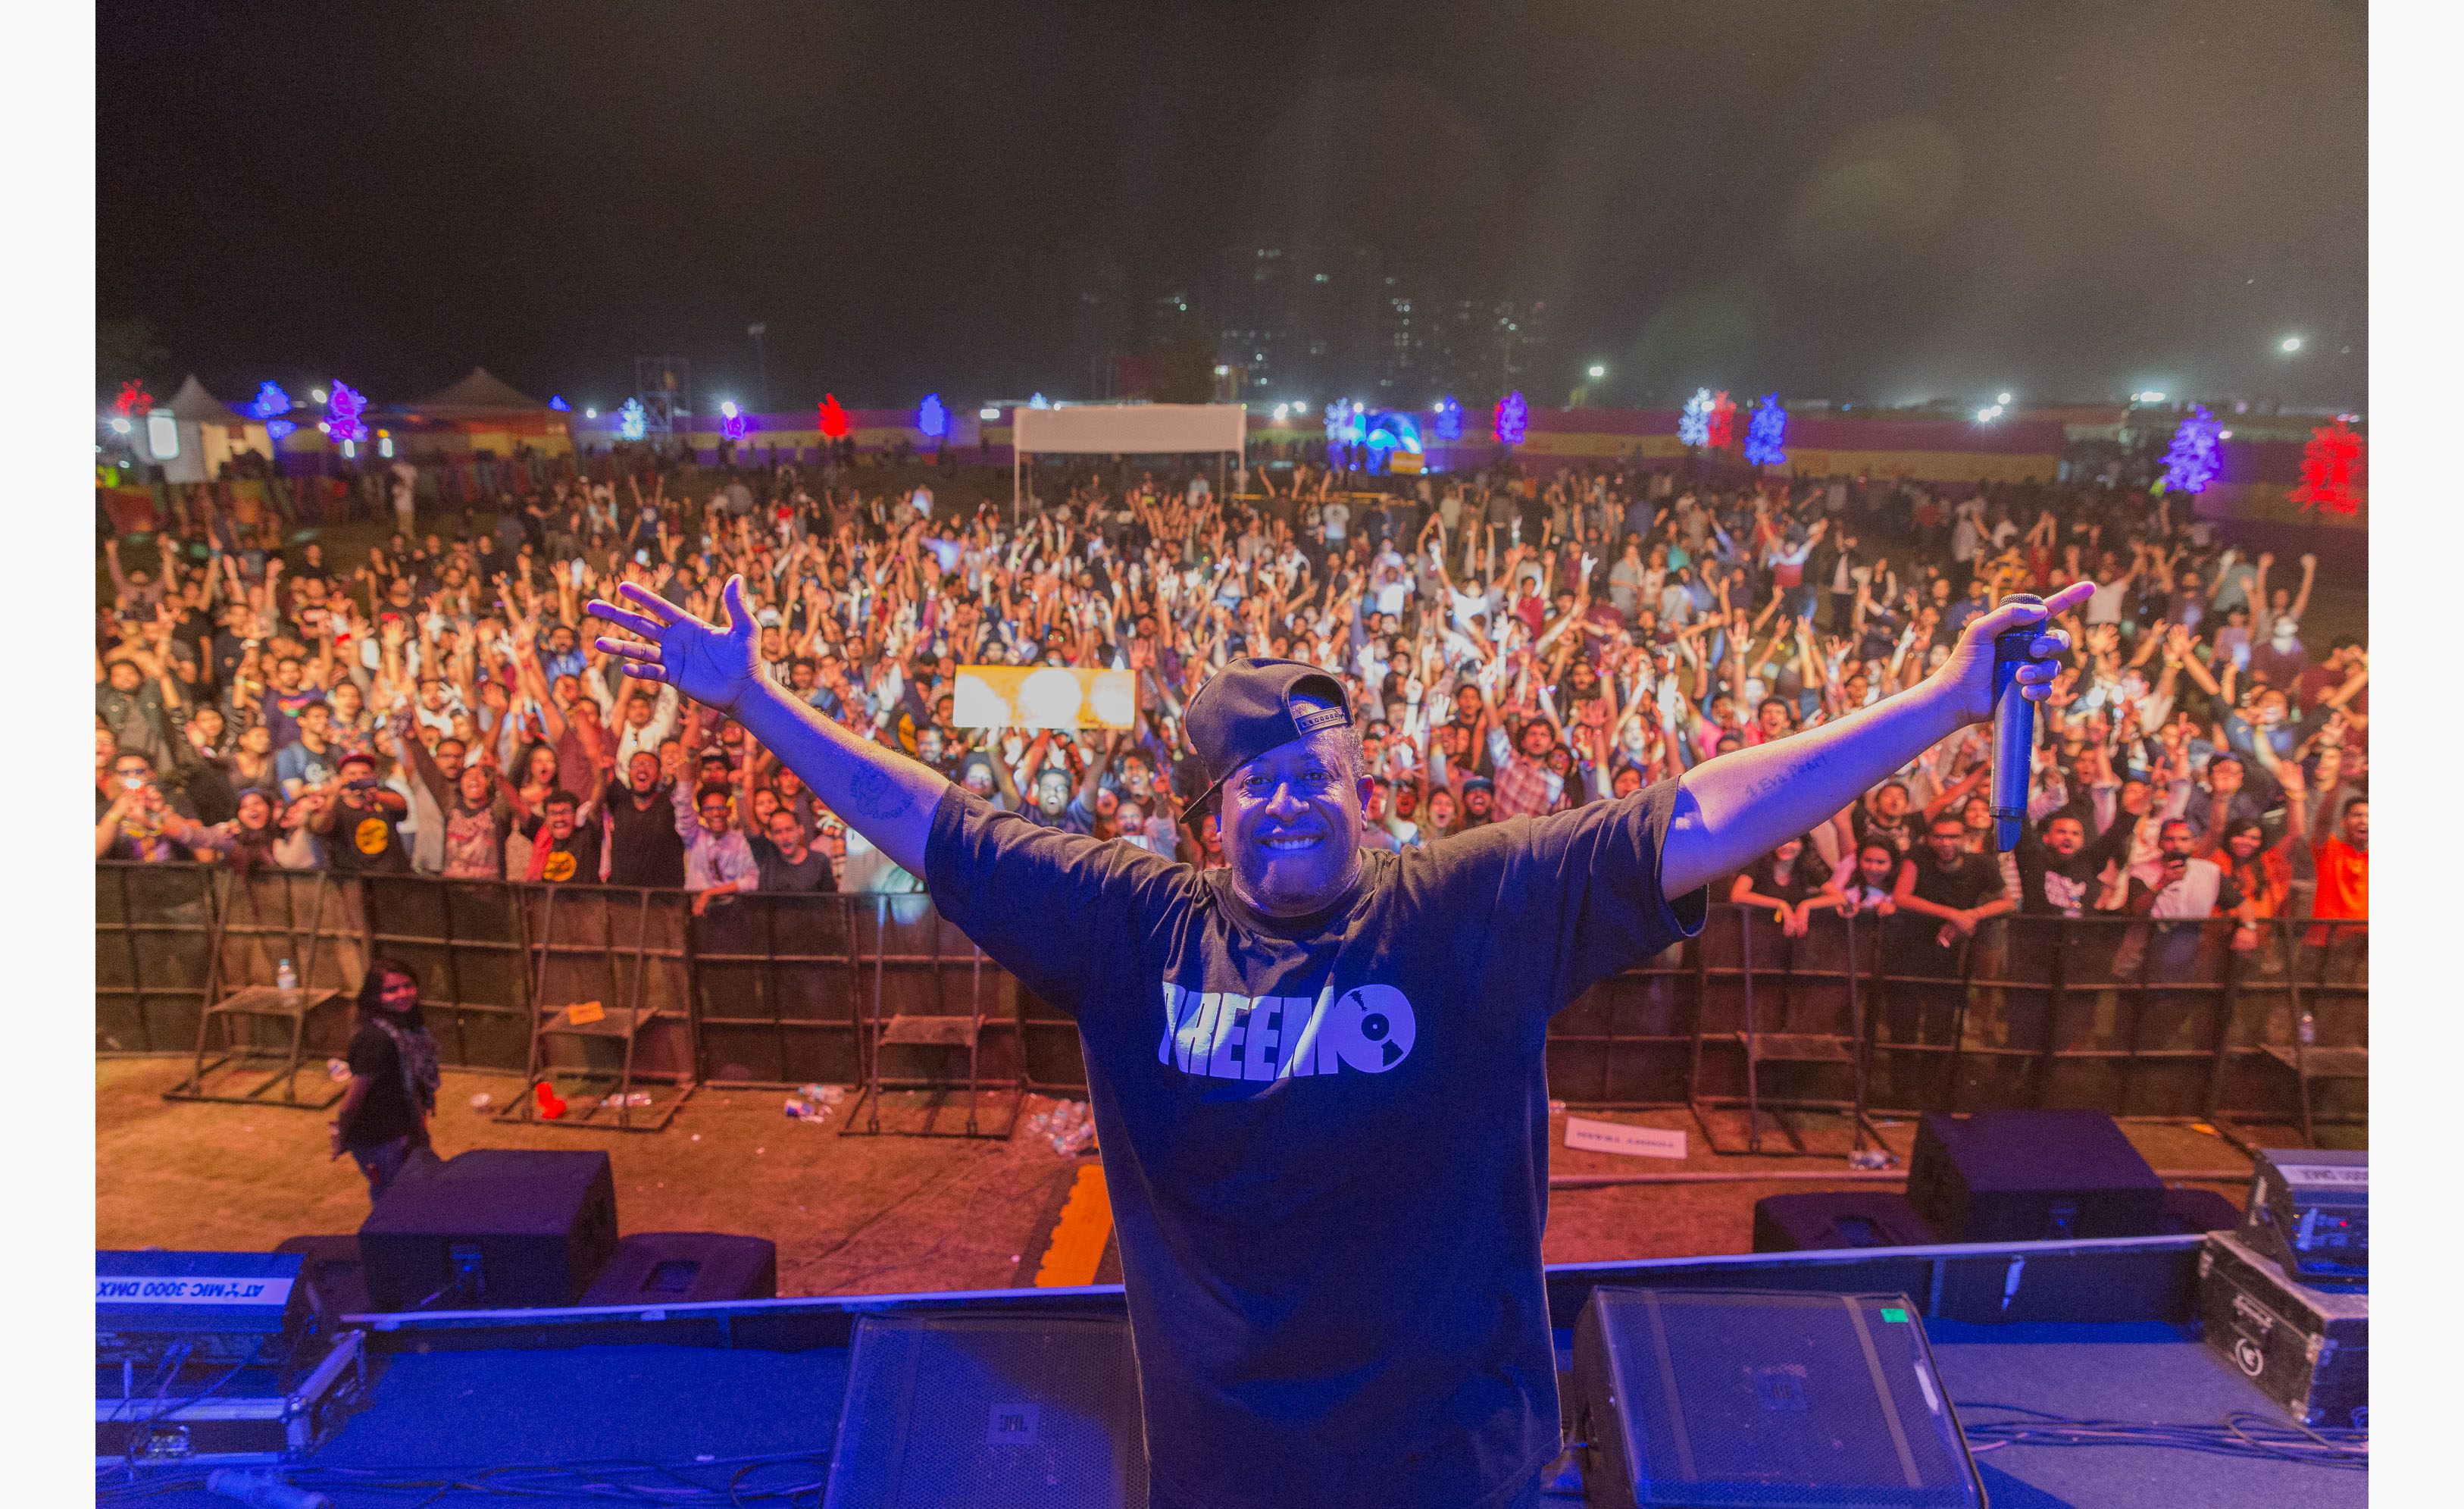  DJ Premier performance on Day 3 of Bacardi NH7 Weekender Pune. Photo Credit - Maanas Singh